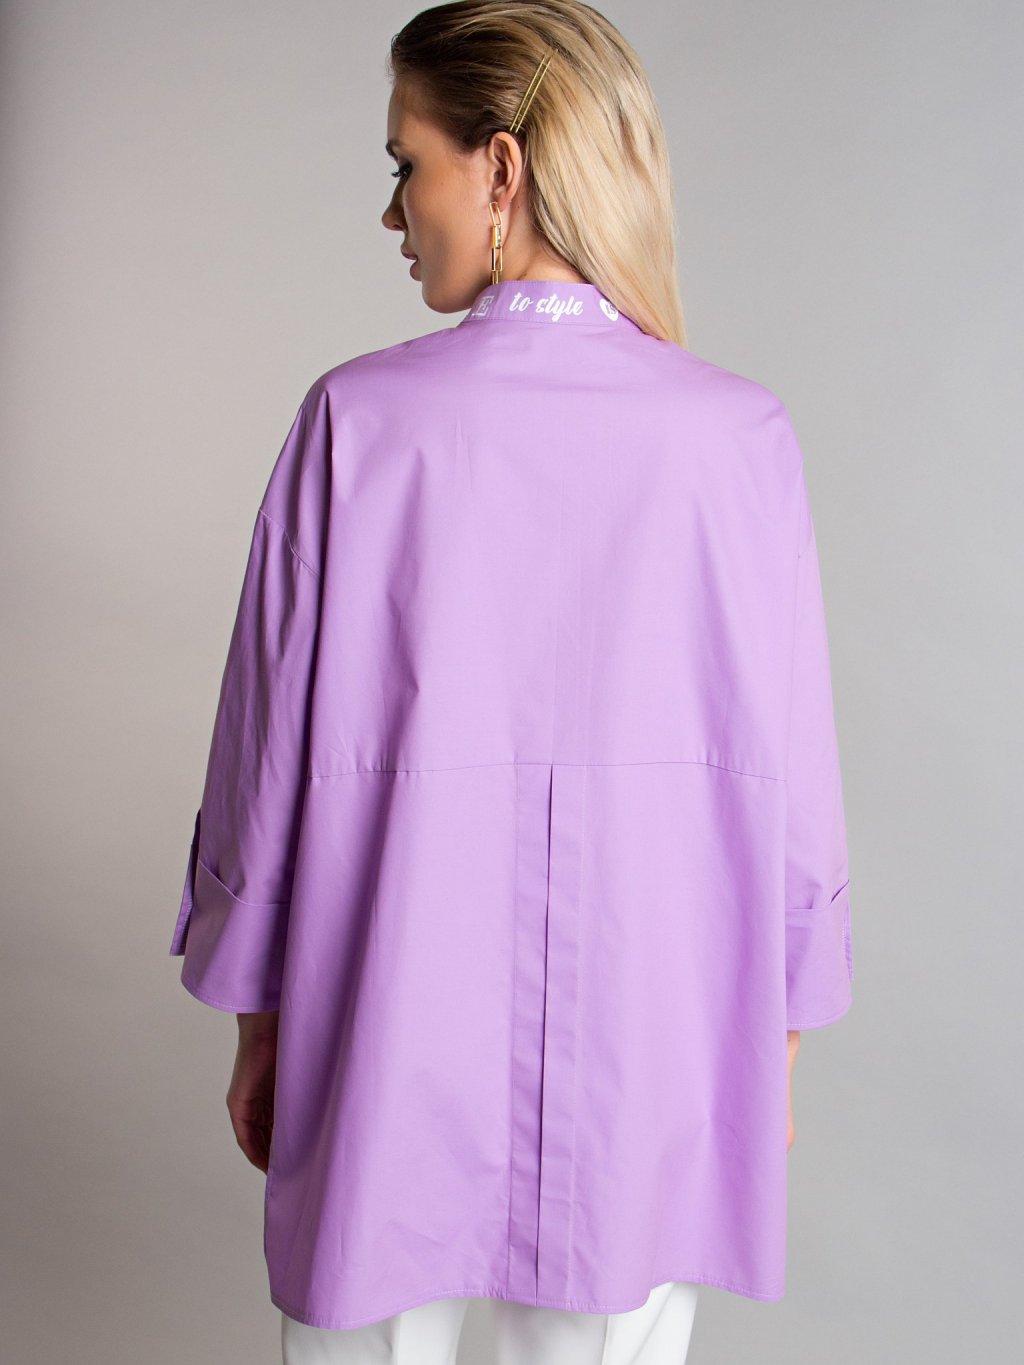 Блуза с надписями цвет cирень Б-115-4 - 5